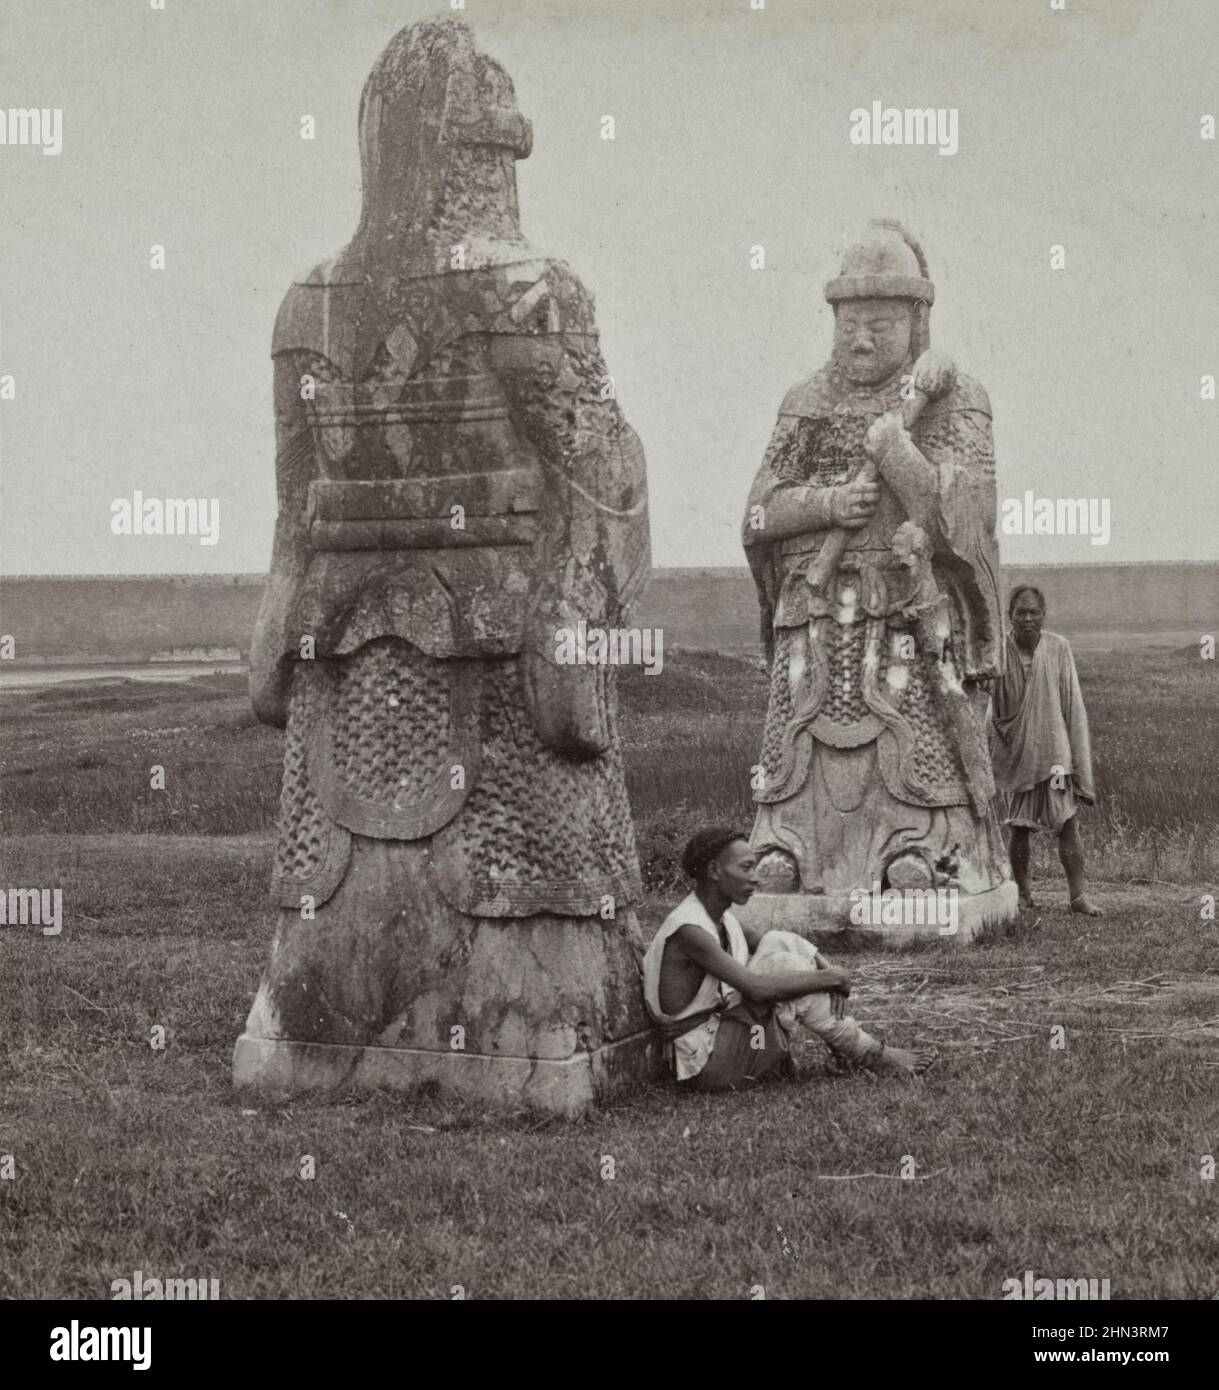 Foto vintage de los hombres chinos con vestimenta tradicional y cola cerca de una enorme figura de piedra en la avenida que conduce a las Tumbas de los Reyes (Tumbas Ming). Na Foto de stock